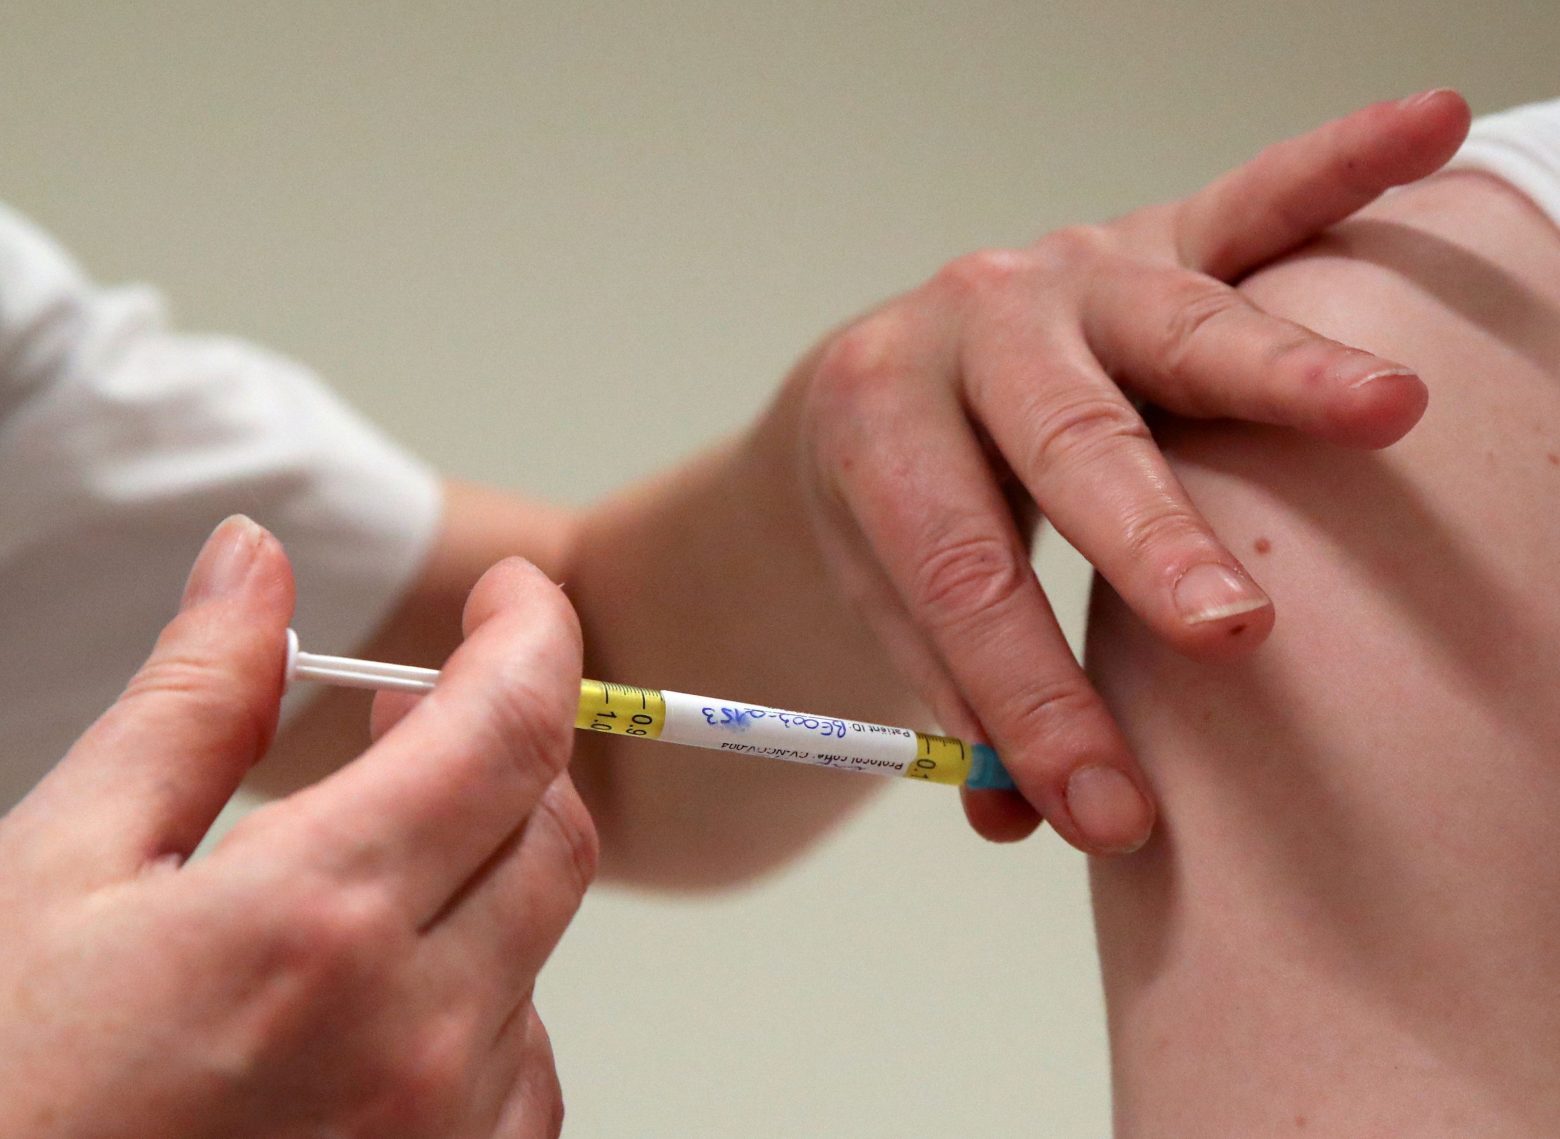 Εμβολιασμοί - Κλείστηκαν 10.000 ραντεβού από πολίτες άνω των 60 ετών μετά τις ανακοινώσεις